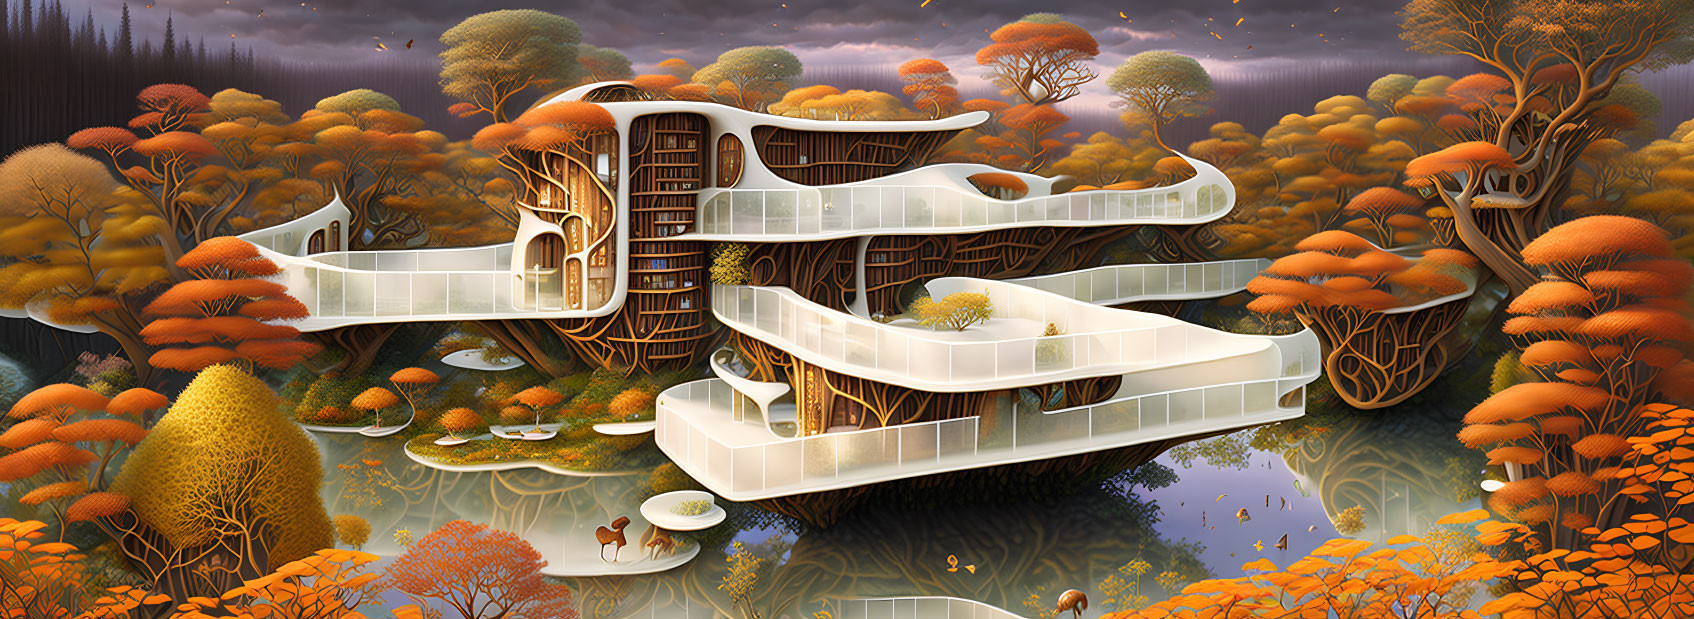 Futuristic multi-level treehouse in whimsical autumn landscape